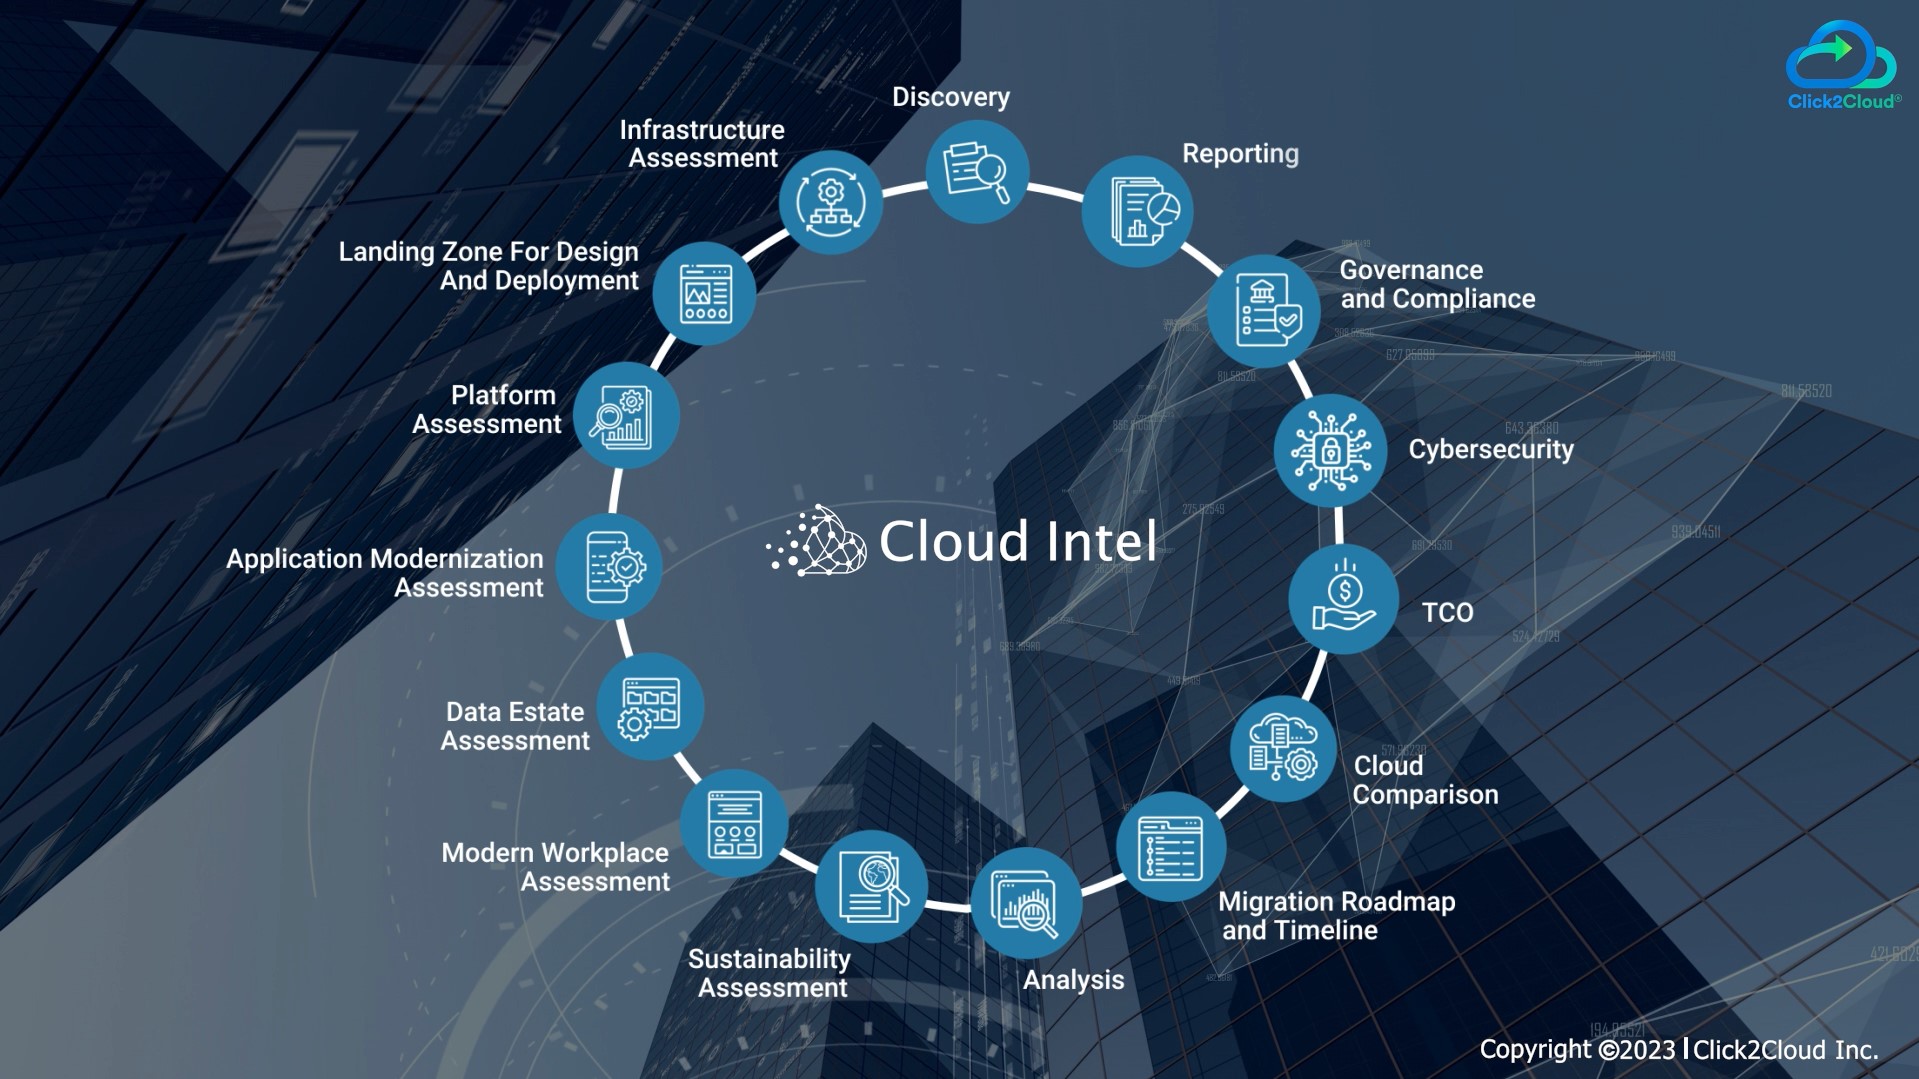 Click2cloud-Cloud Intel - A Platform for Digital Transformation_Video